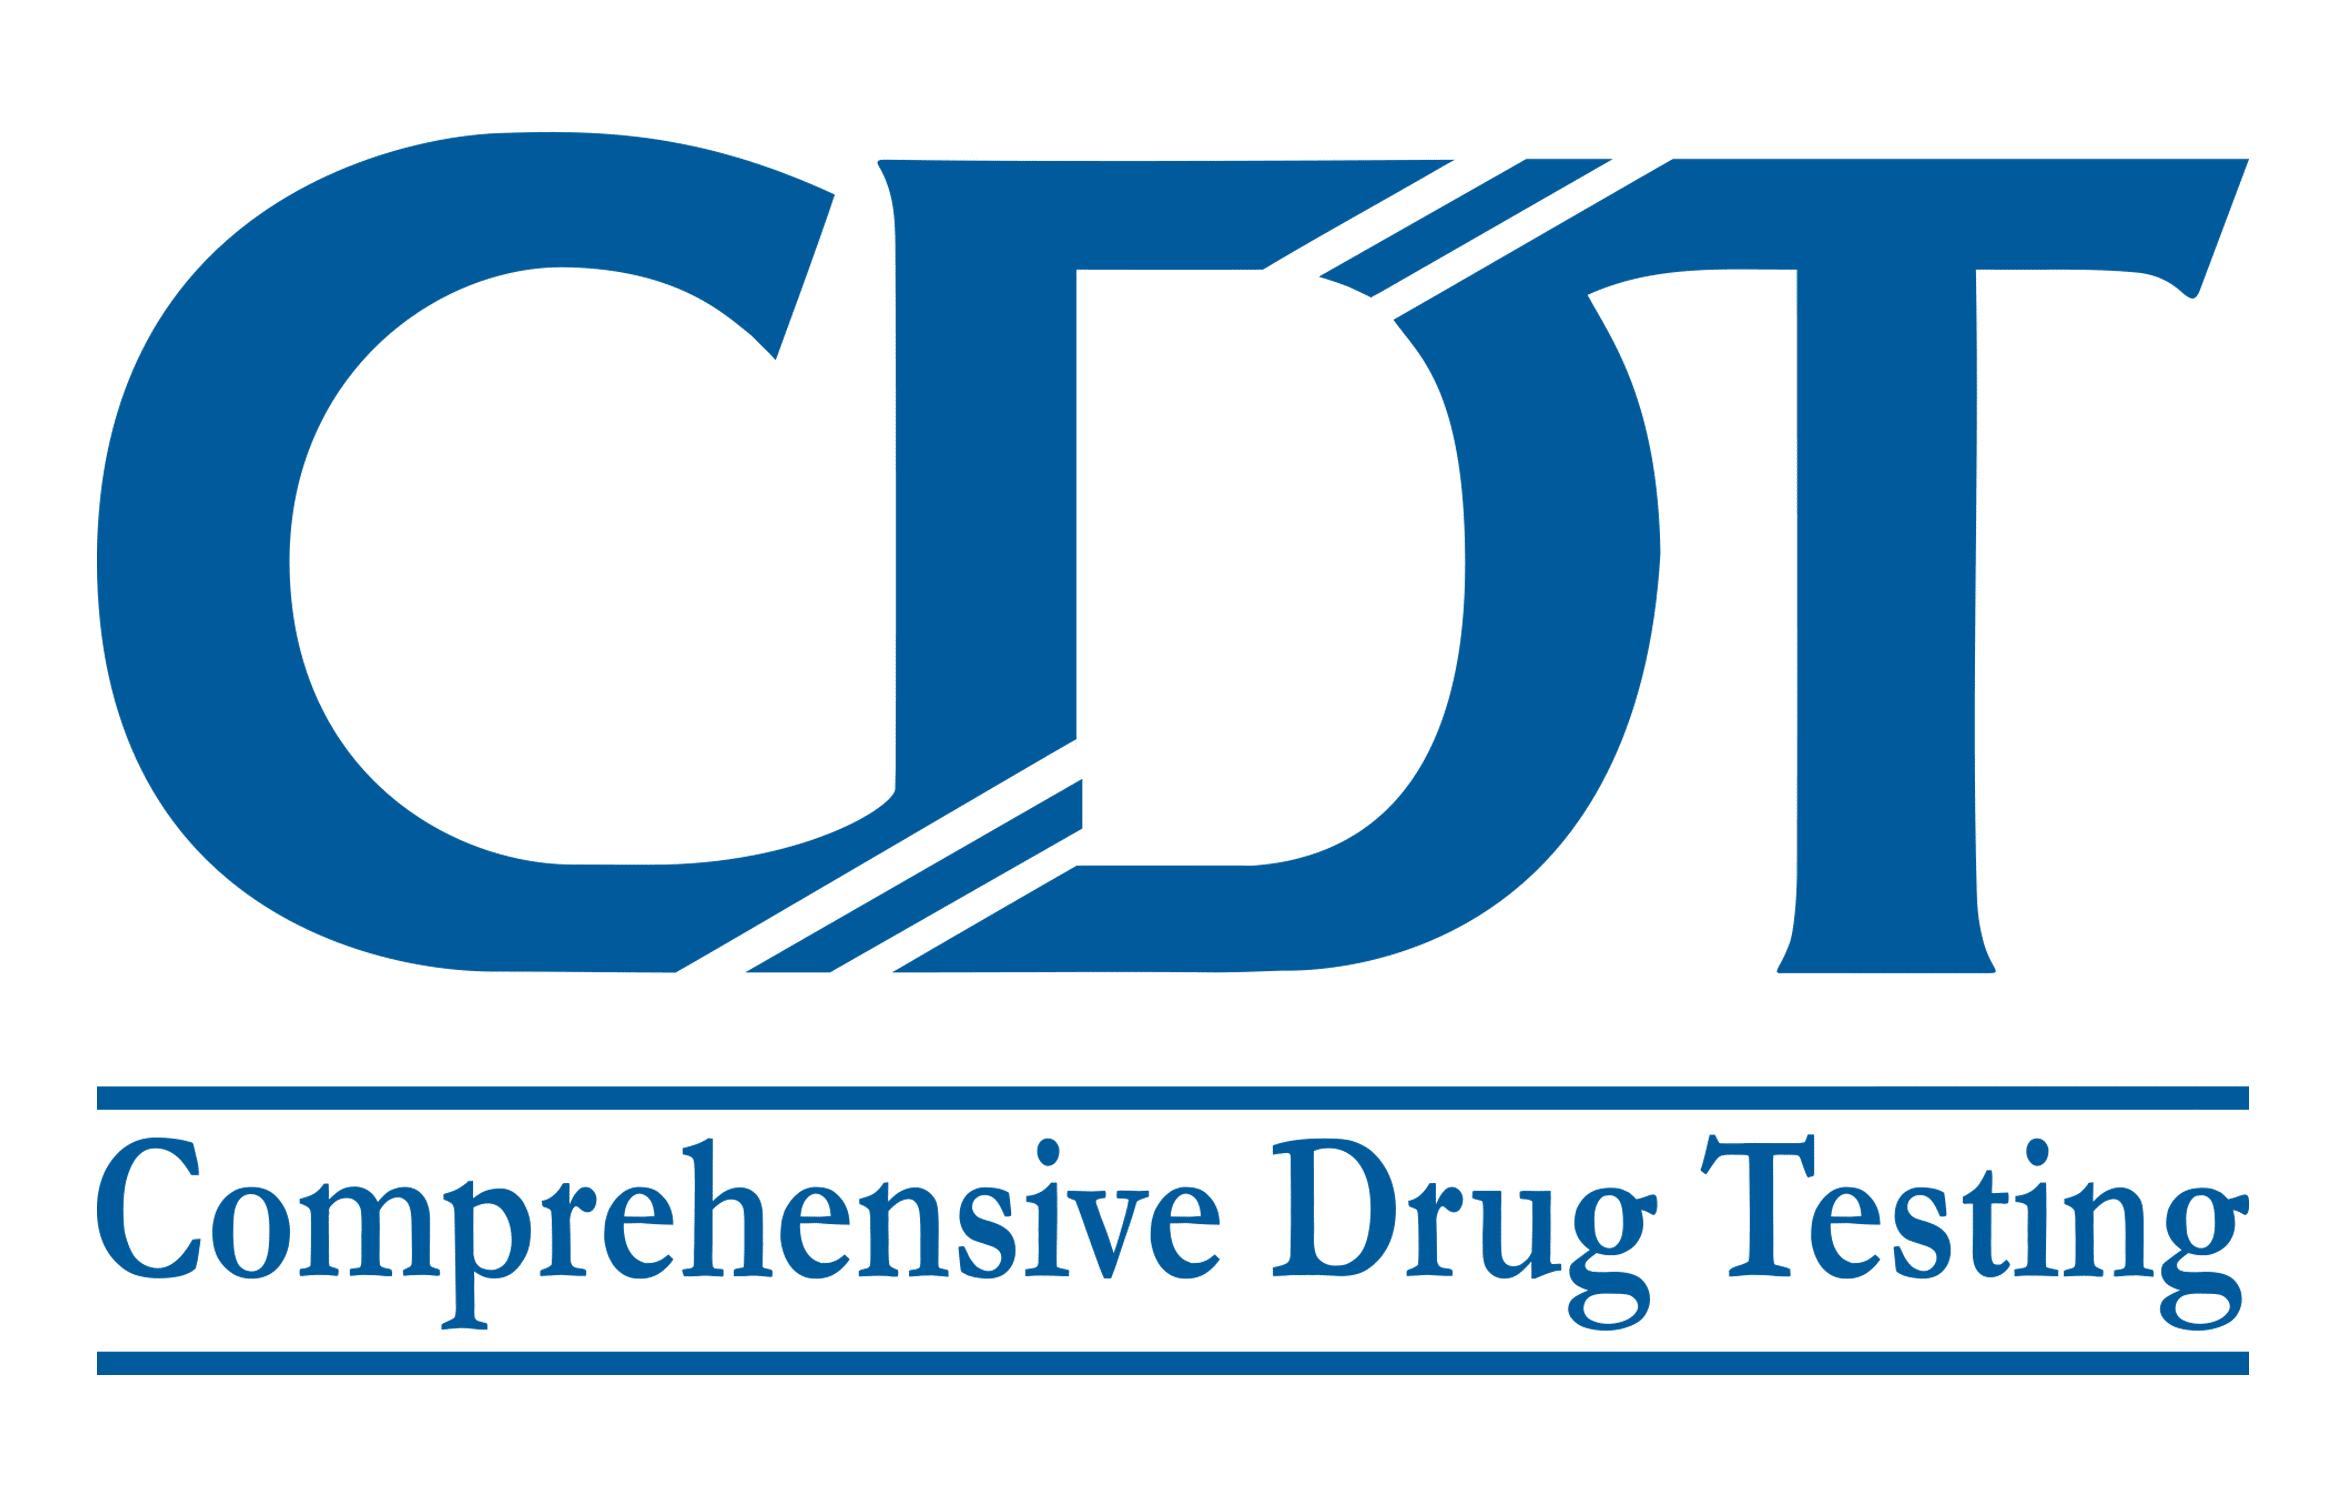 Comprehensive Drug Testing, Inc (CDT)